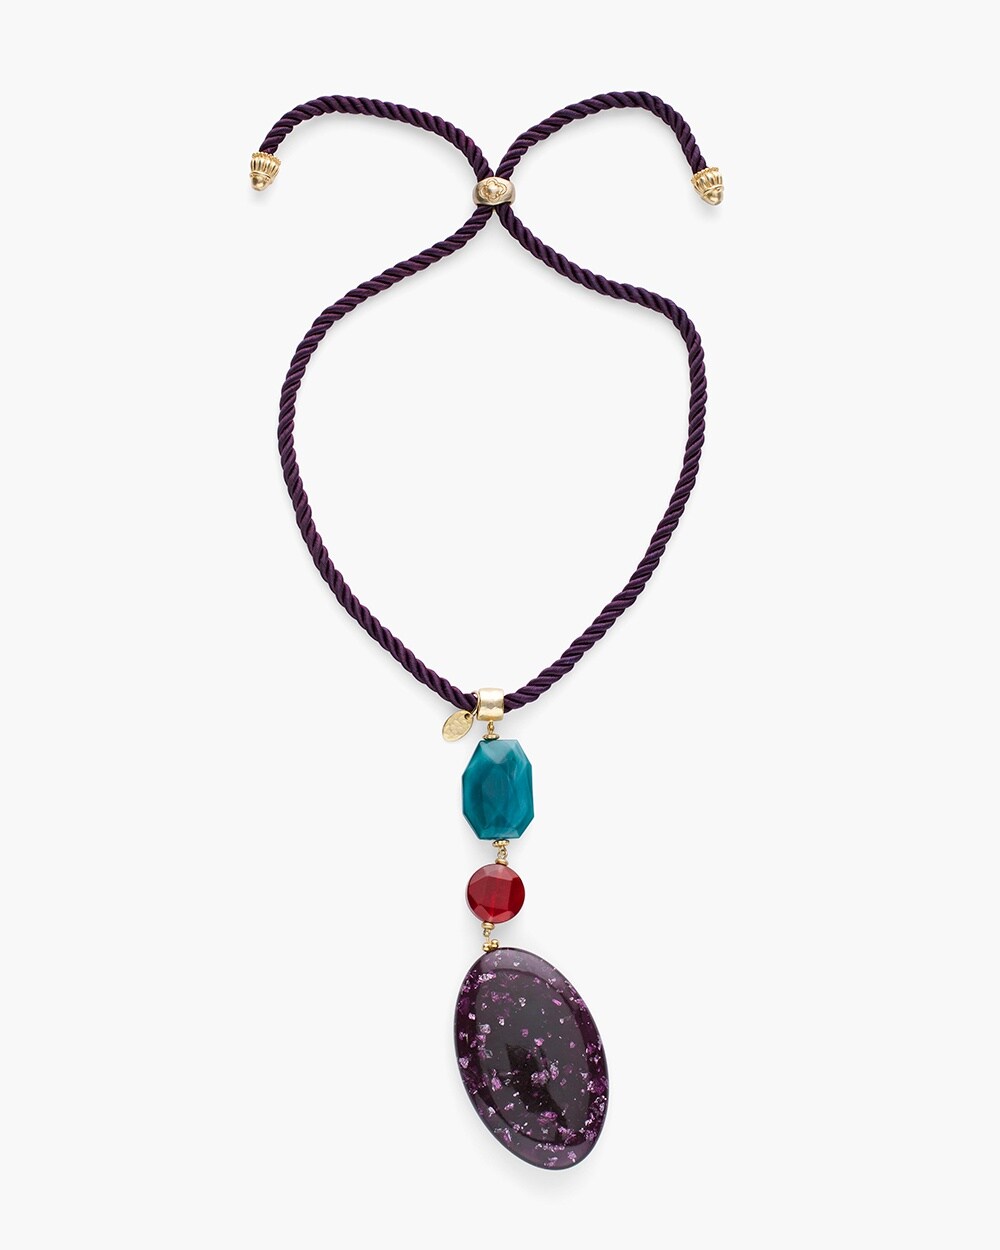 Convertible Multi-Colored Stone Pendant Necklace